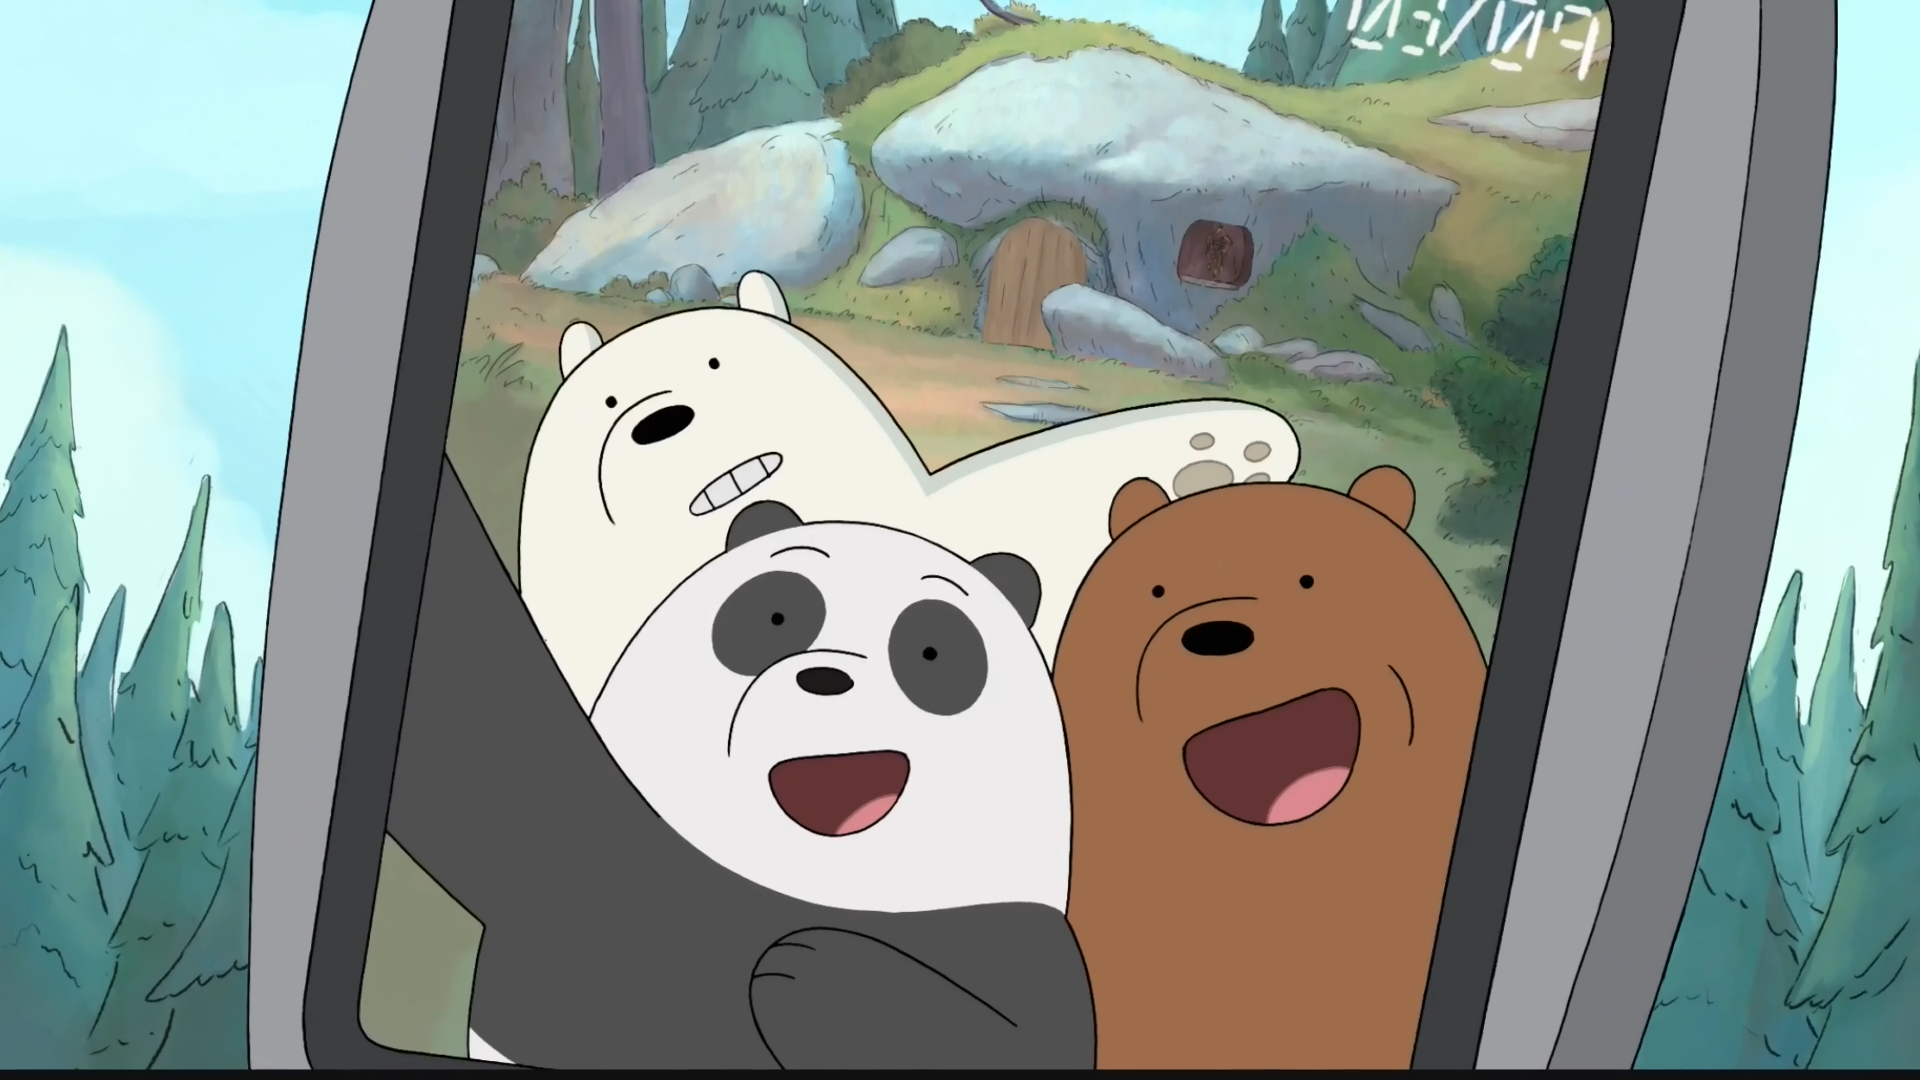 咱们裸熊壁纸熊猫图片